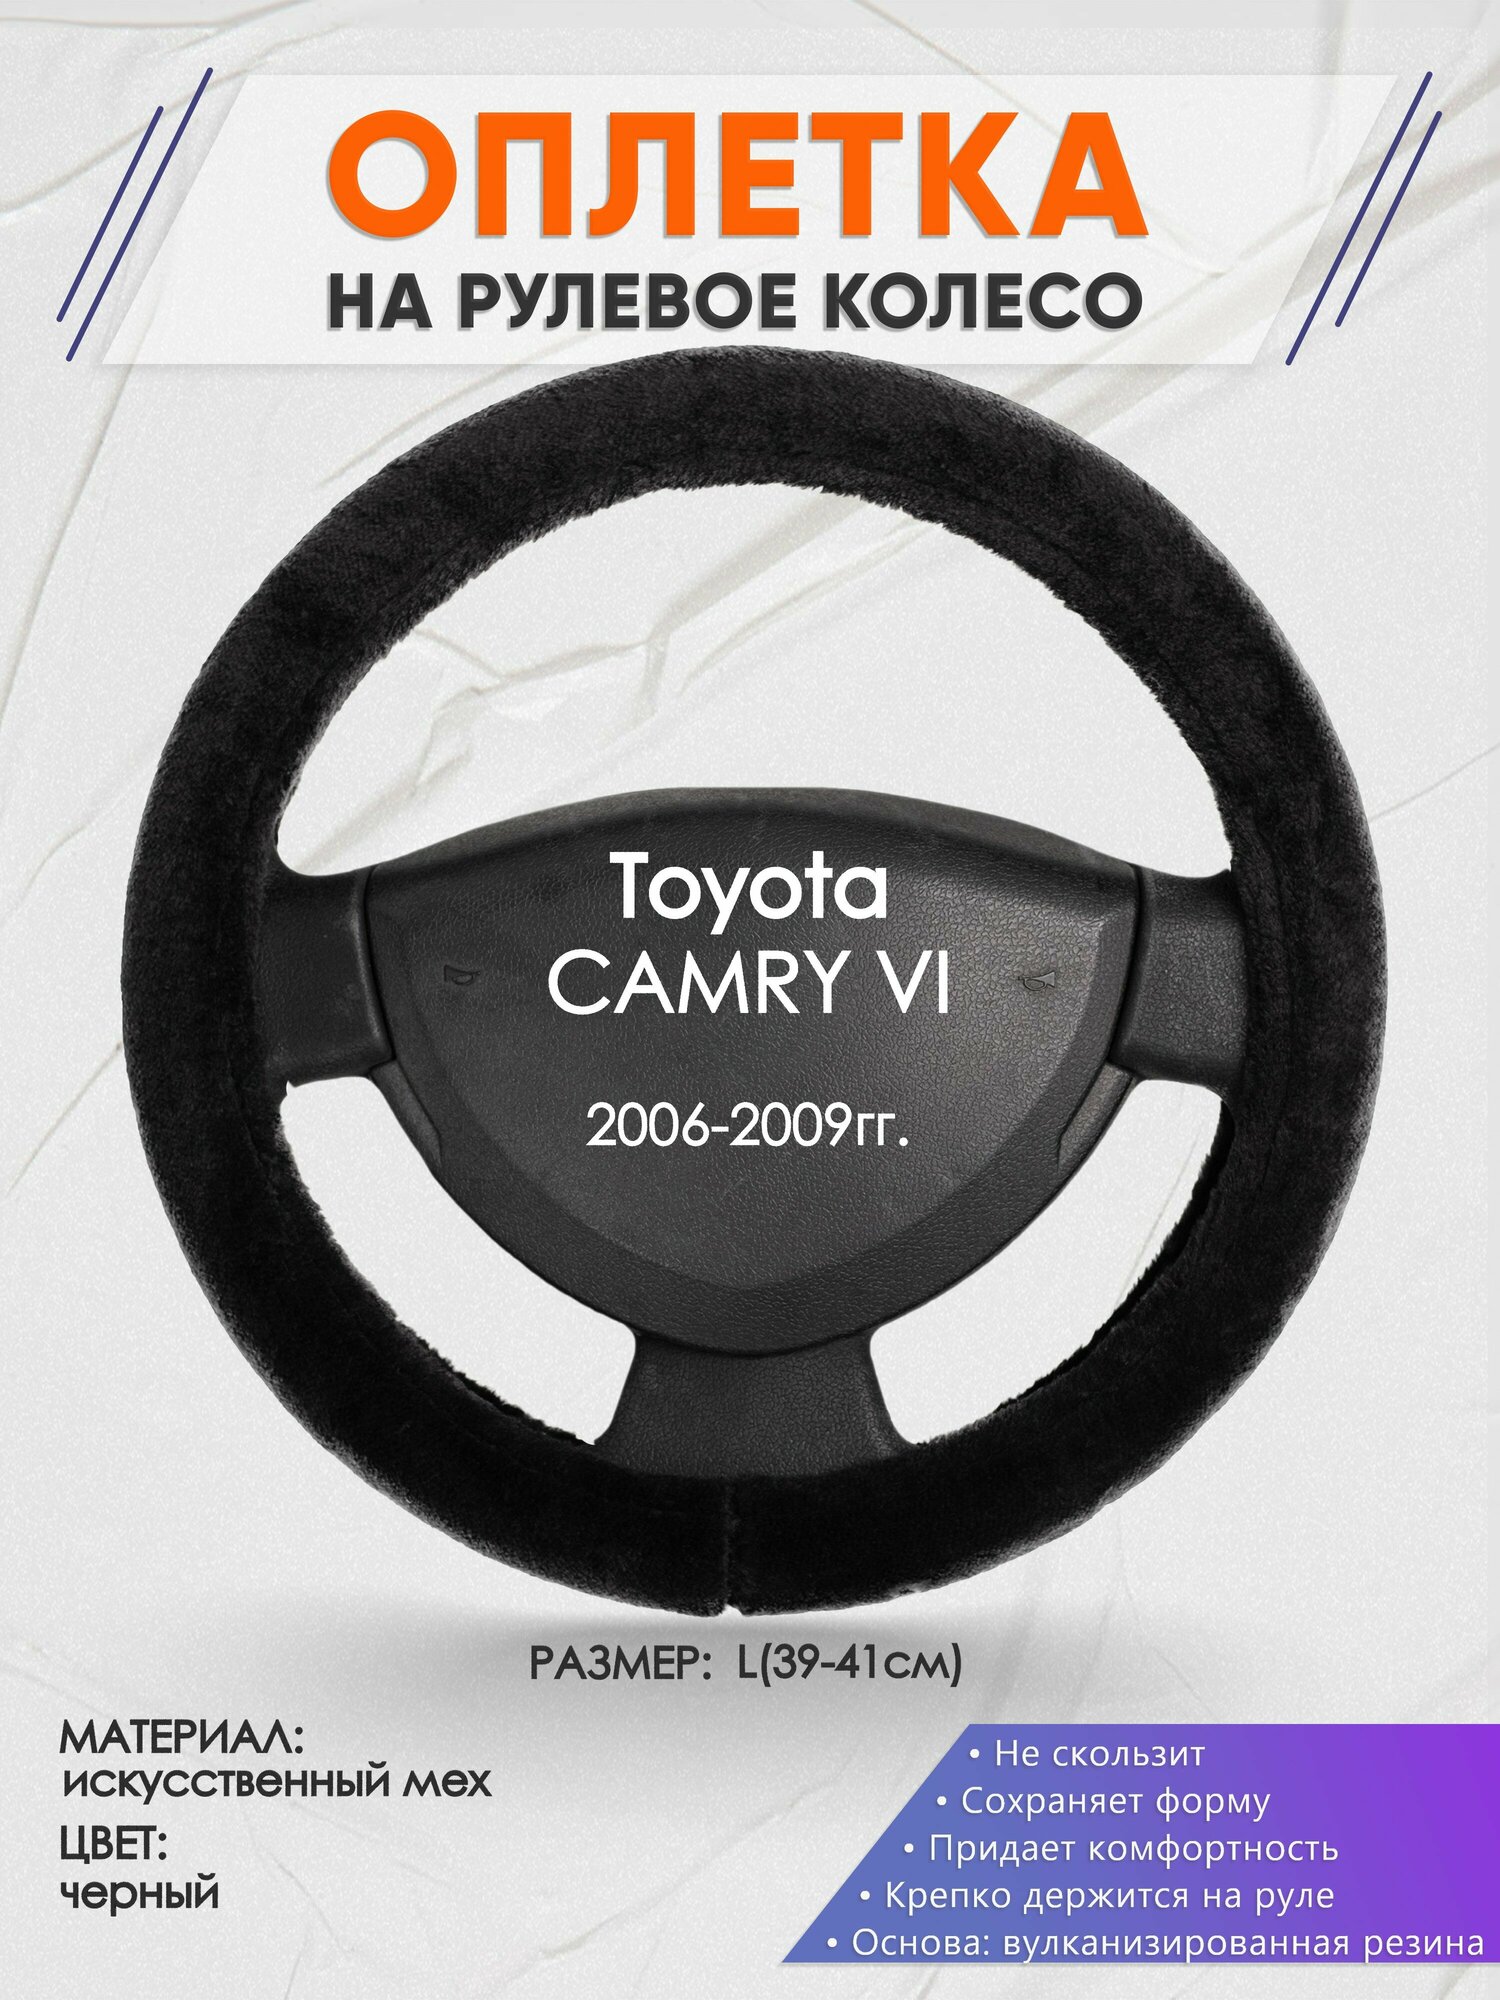 Оплетка на руль для Toyota CAMRY 6(Тойота Камри 6) 2006-2009, L(39-41см), Искусственный мех 45